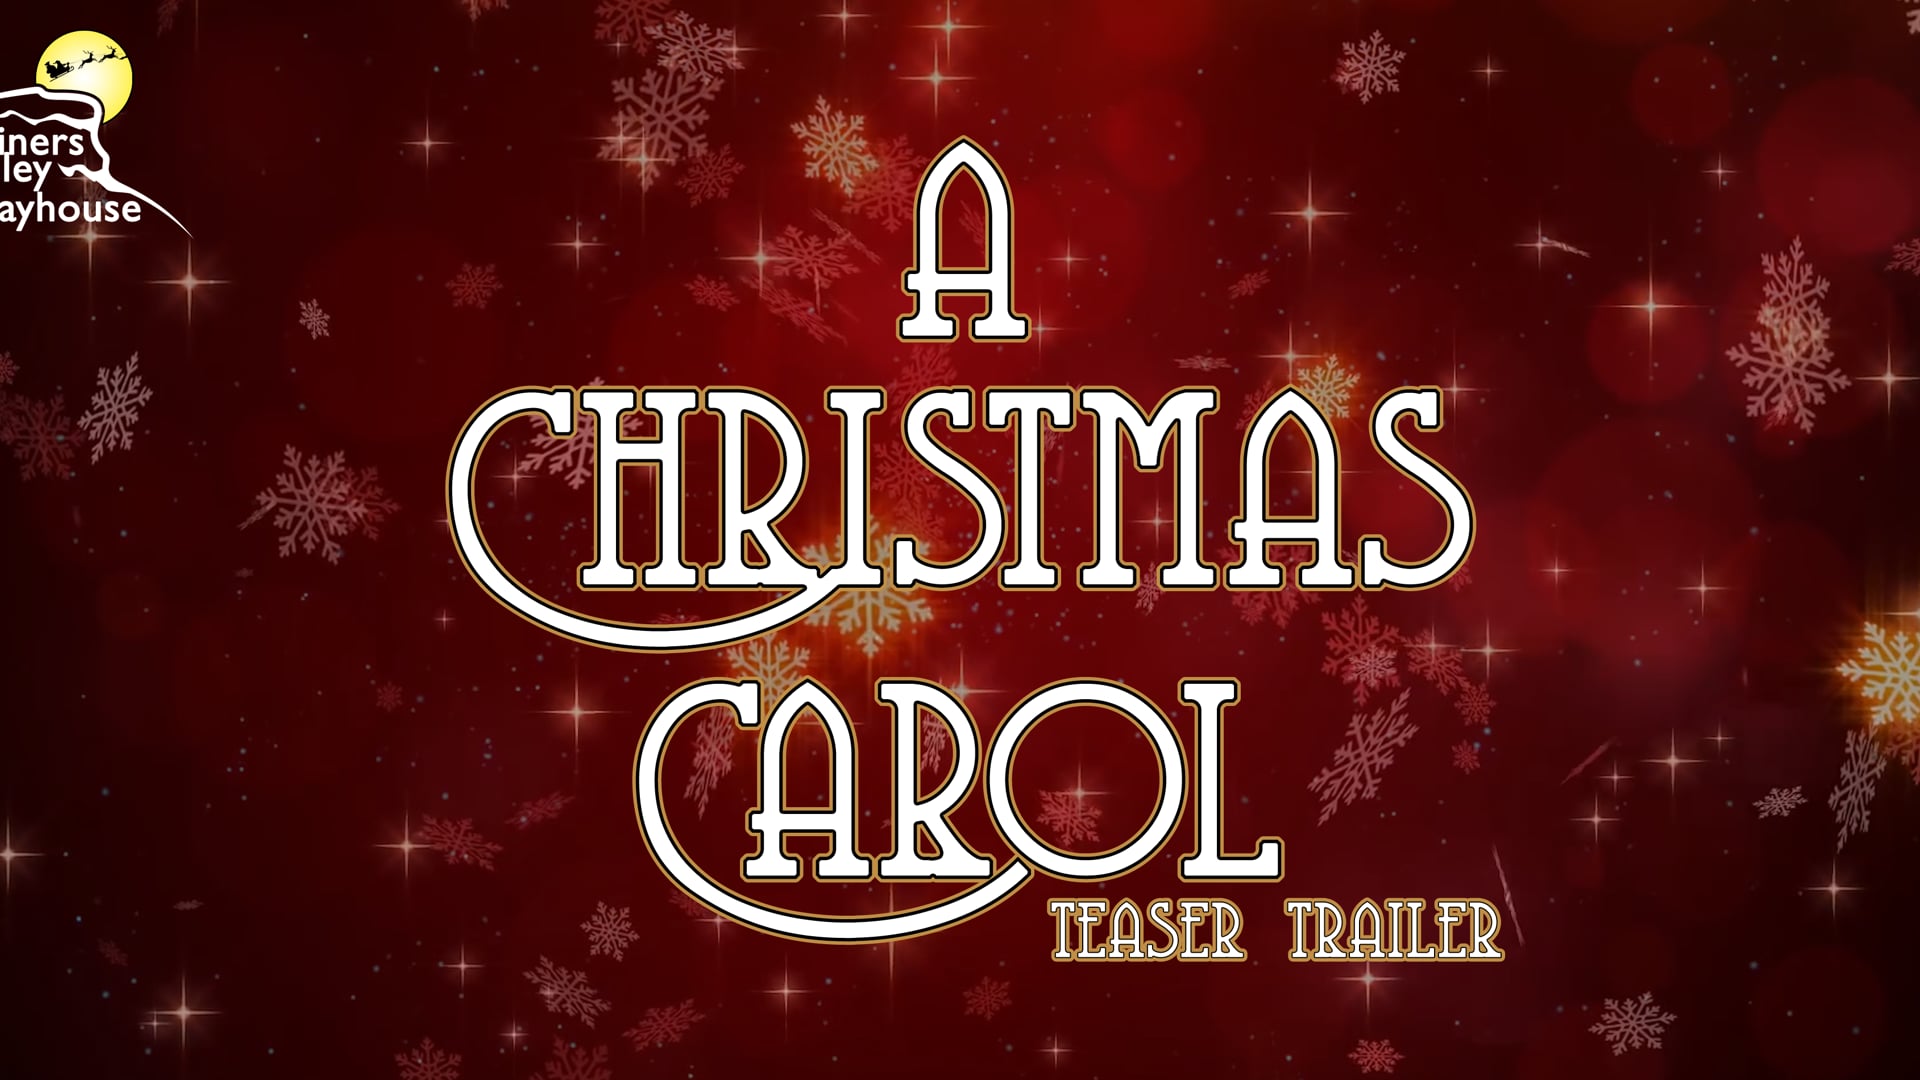 A Christmas Carol (Teaser Trailer) by RayBaileyTV